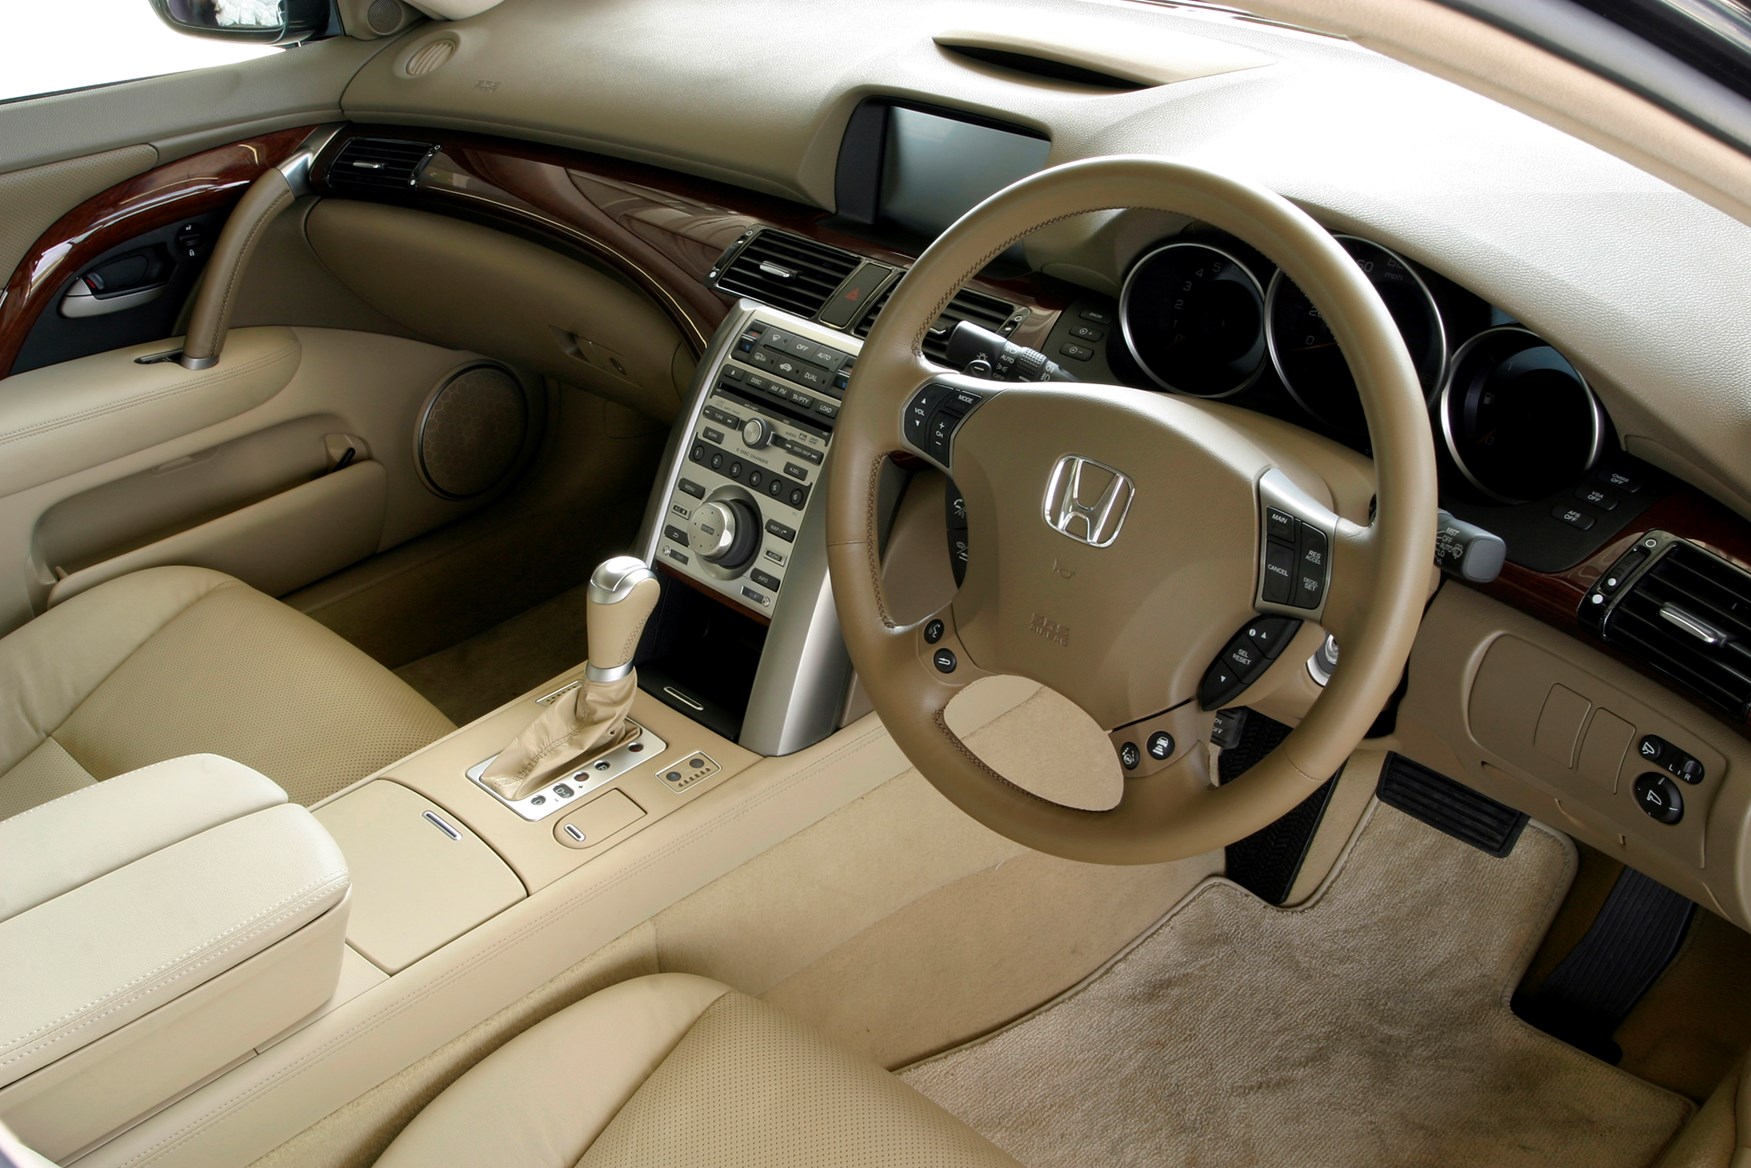 Honda Legend Saloon Review (2006 - 2007) | Parkers